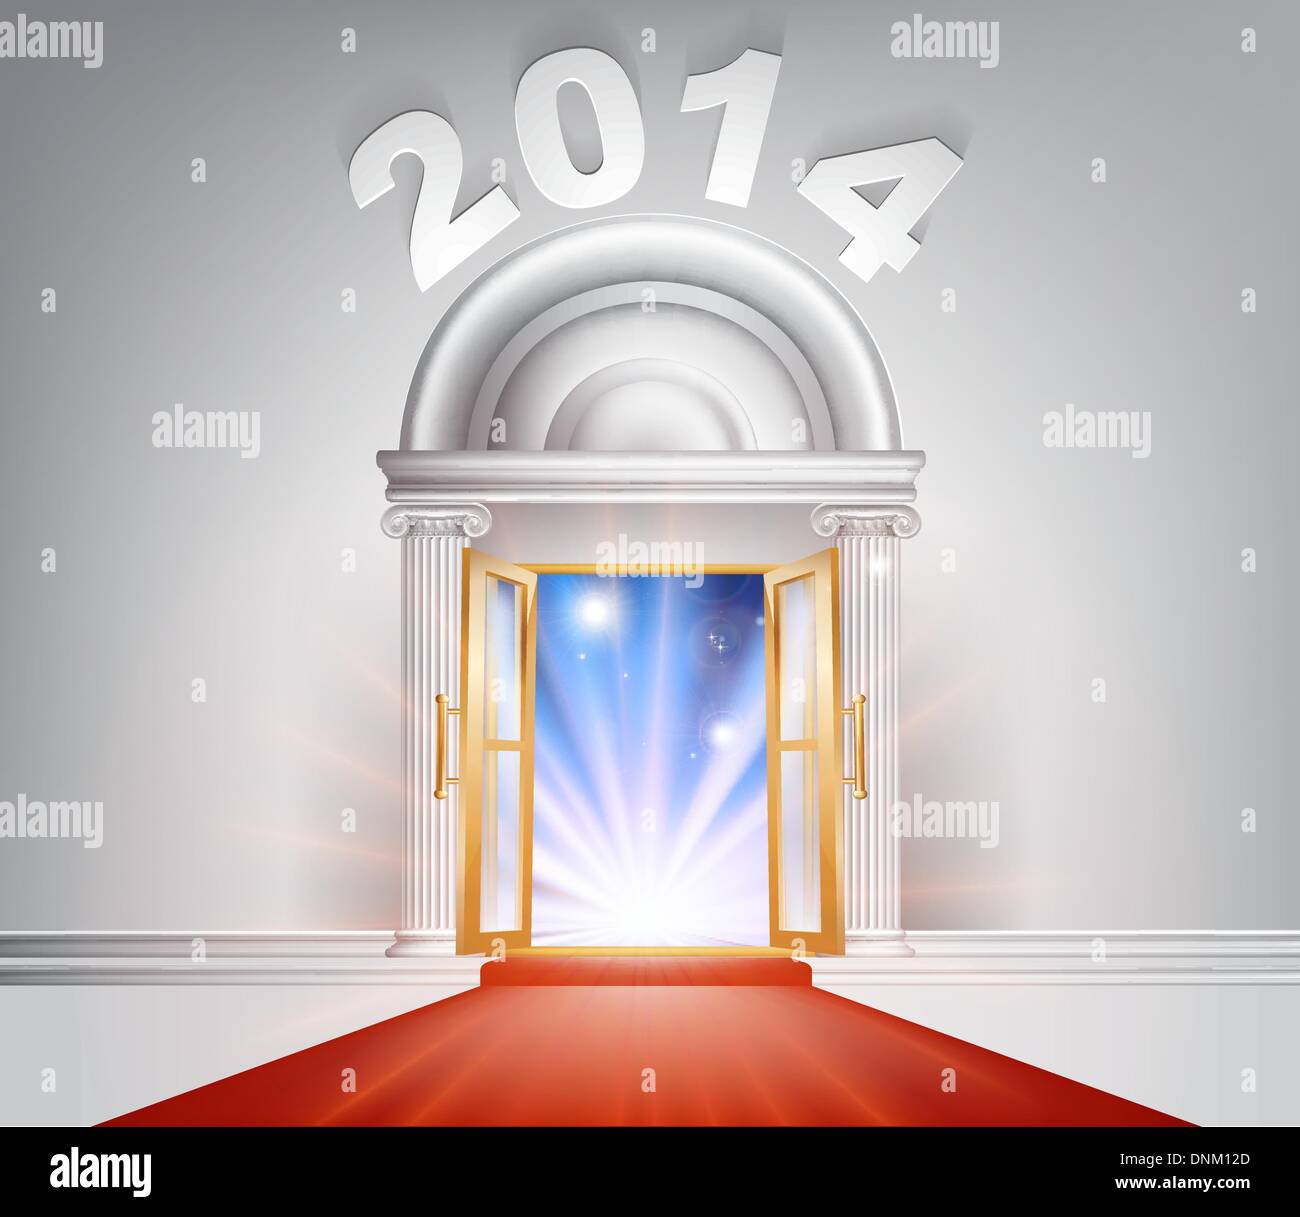 Nuovo anno porta 2014 nozione di un fantastico di marmo bianco porta con colonne e un tappeto rosso con lo streaming di luce attraverso di esso. Illustrazione Vettoriale